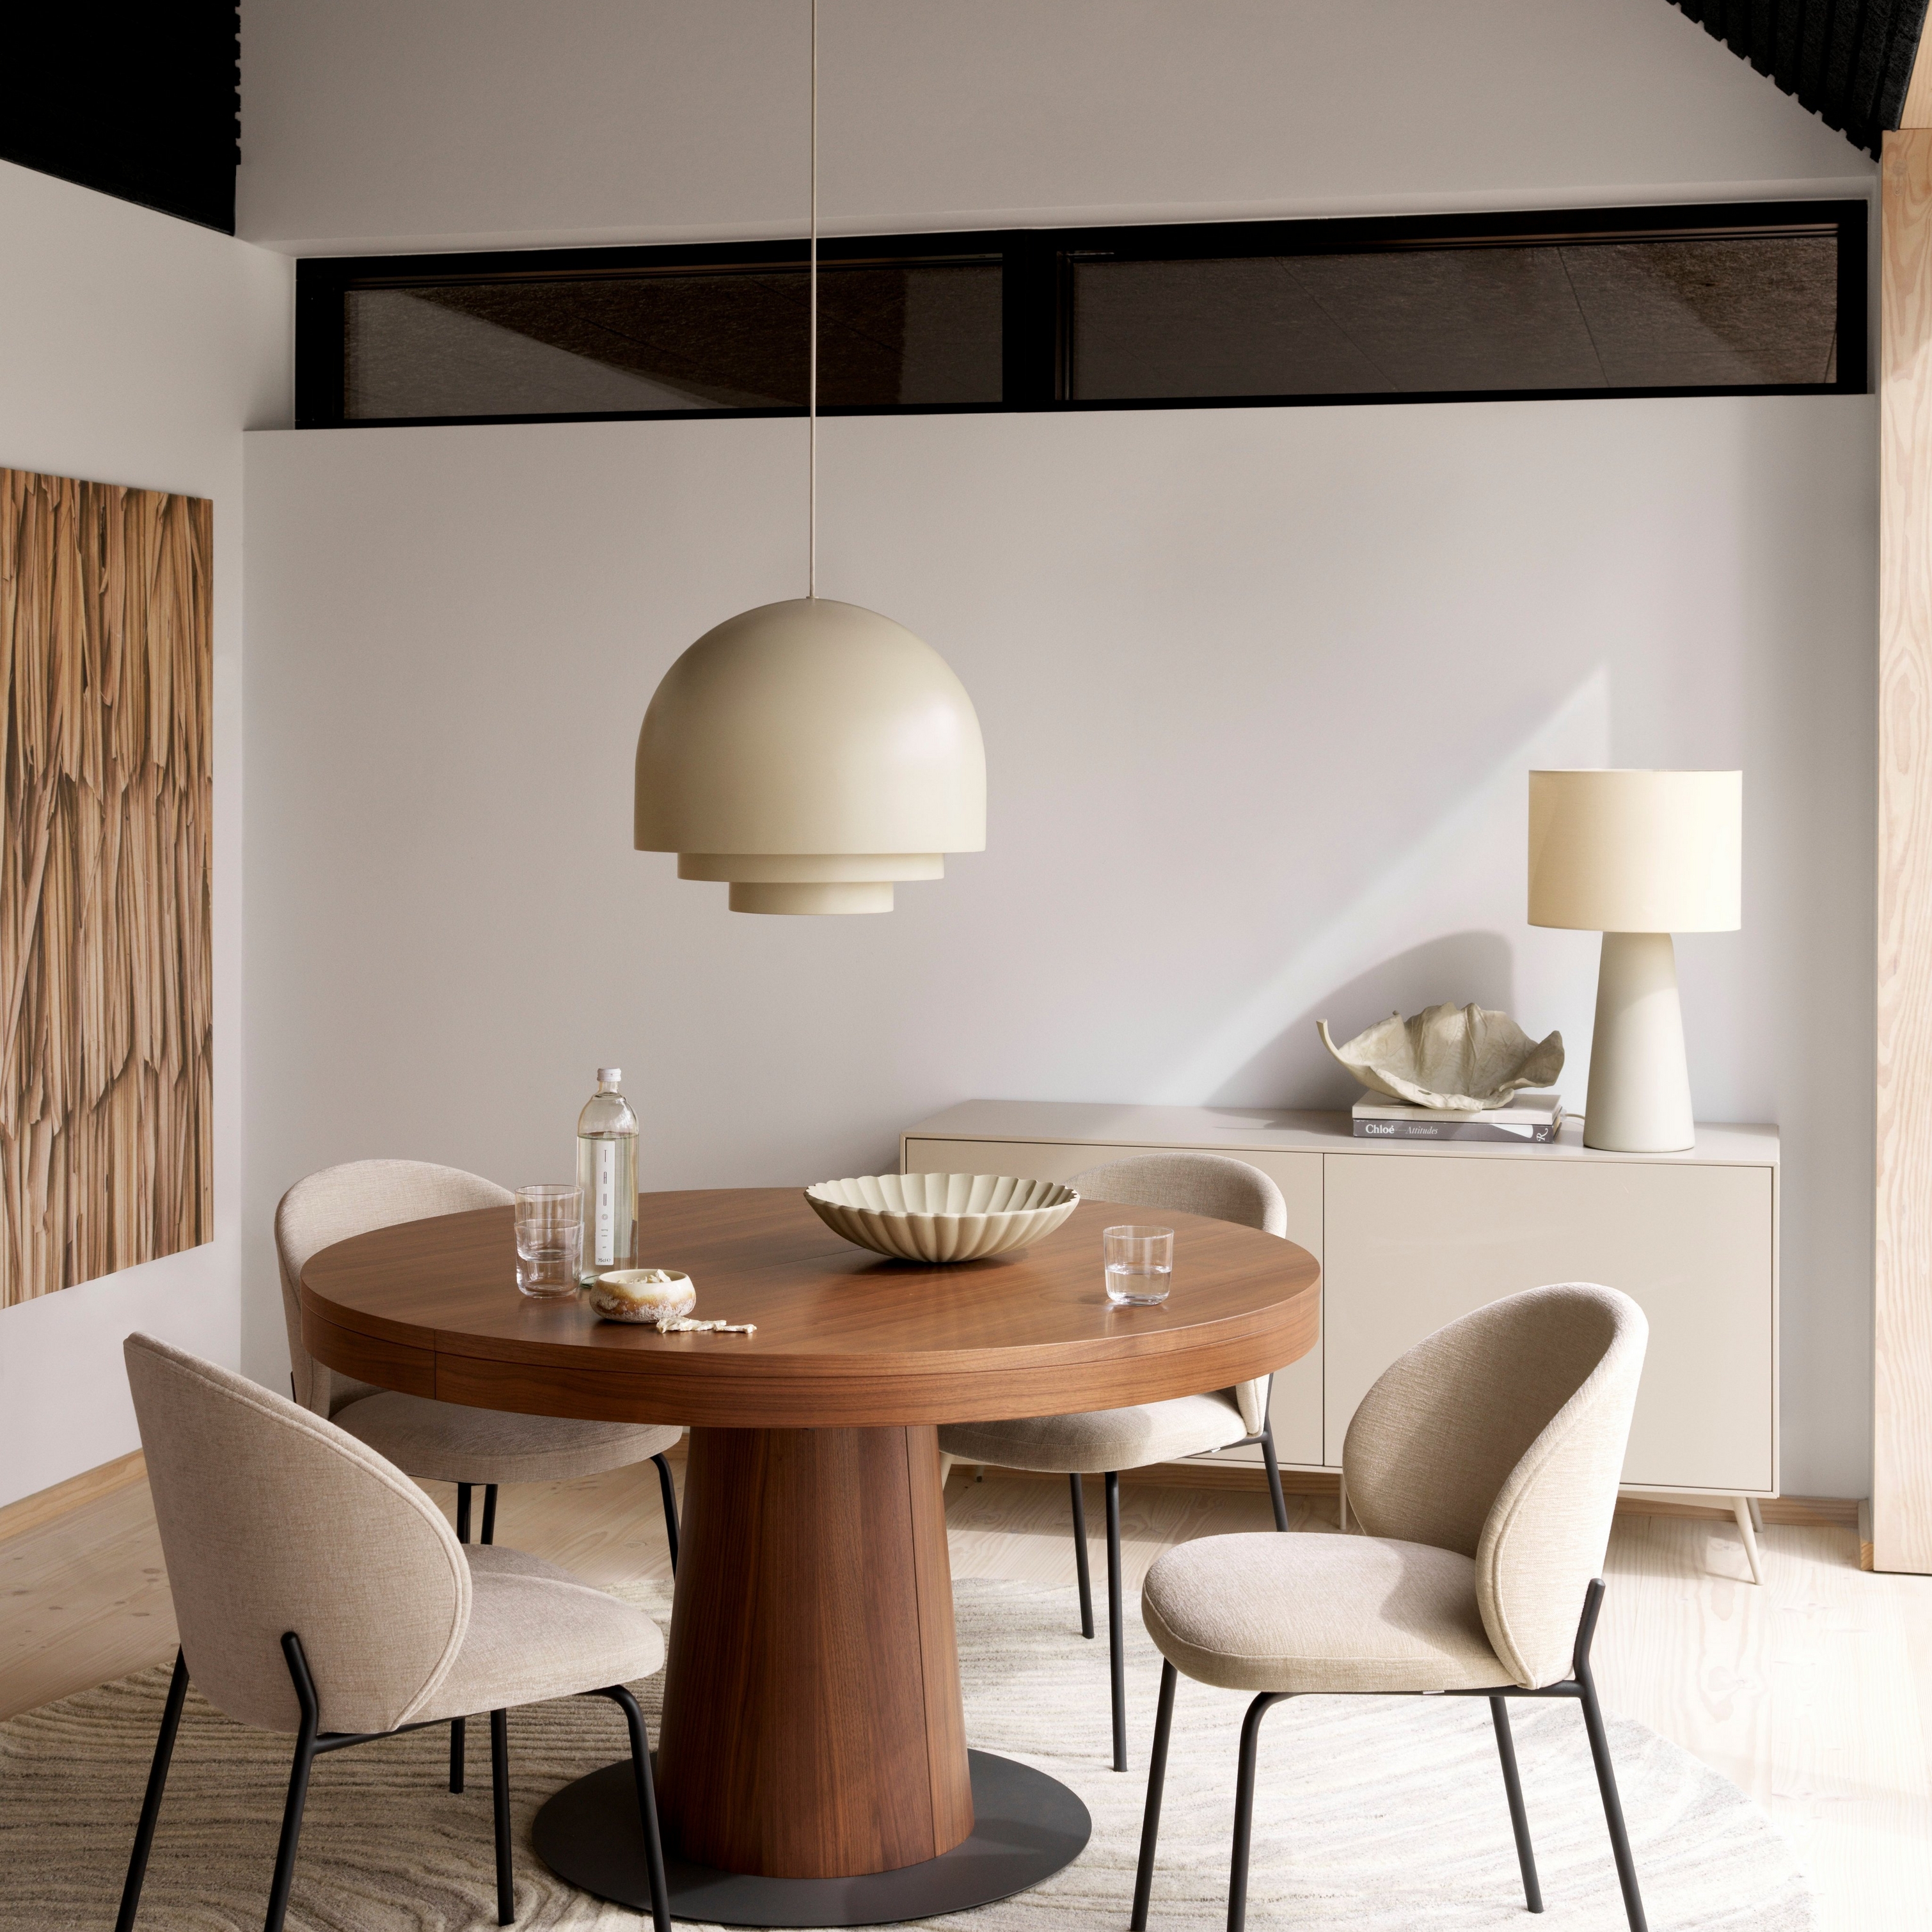 Salle à manger contemporaine avec table ronde en bois Granada, chaises Princeton foncées, éclairage suspendu et tapis beige.